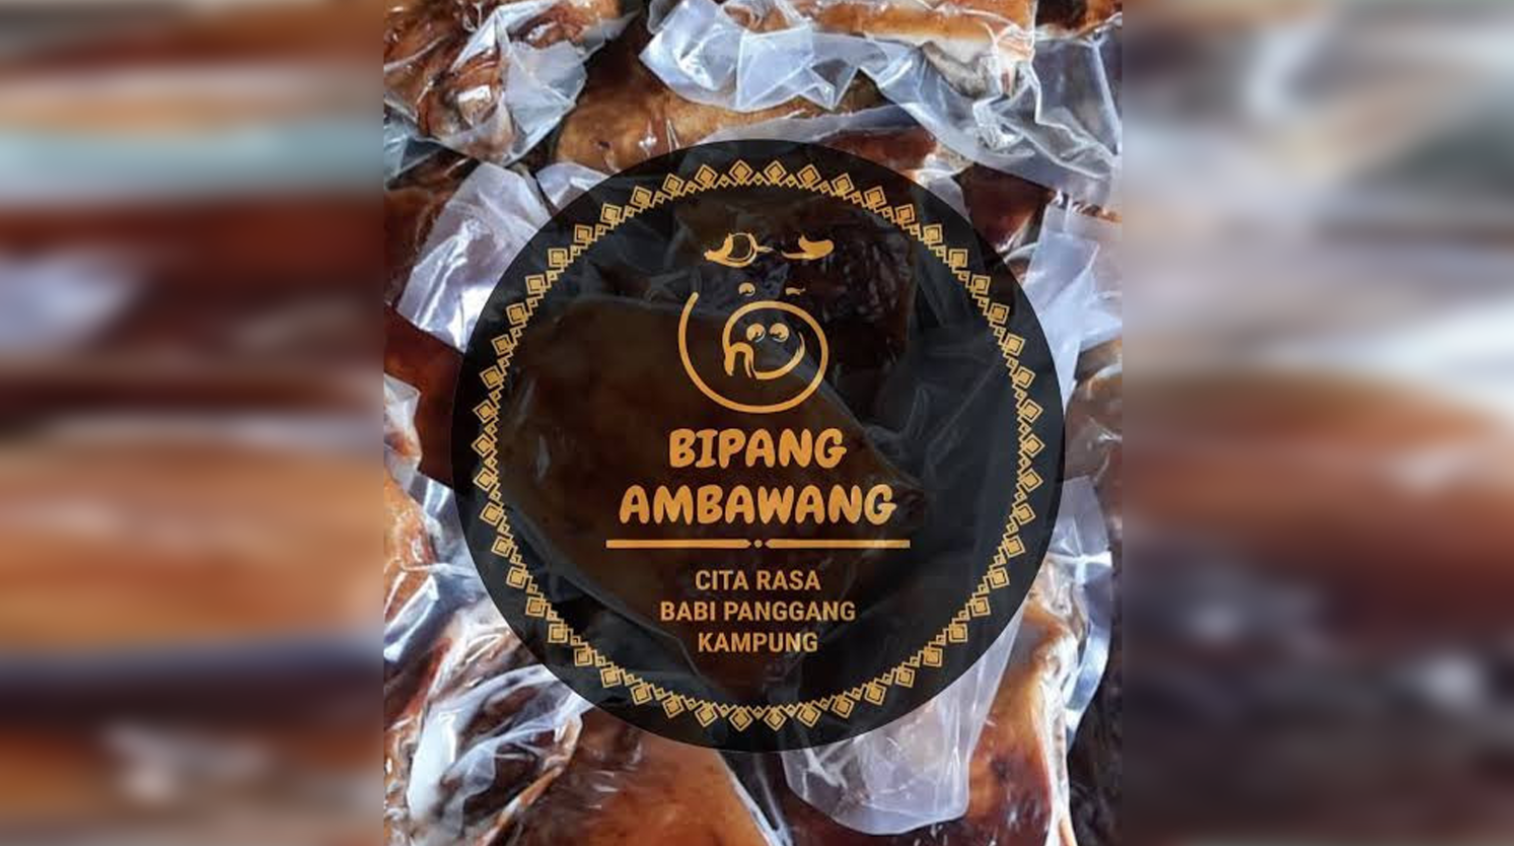 Bipang (babi panggang) Ambawang, Kalimantan Barat. (Foto: Instagram)